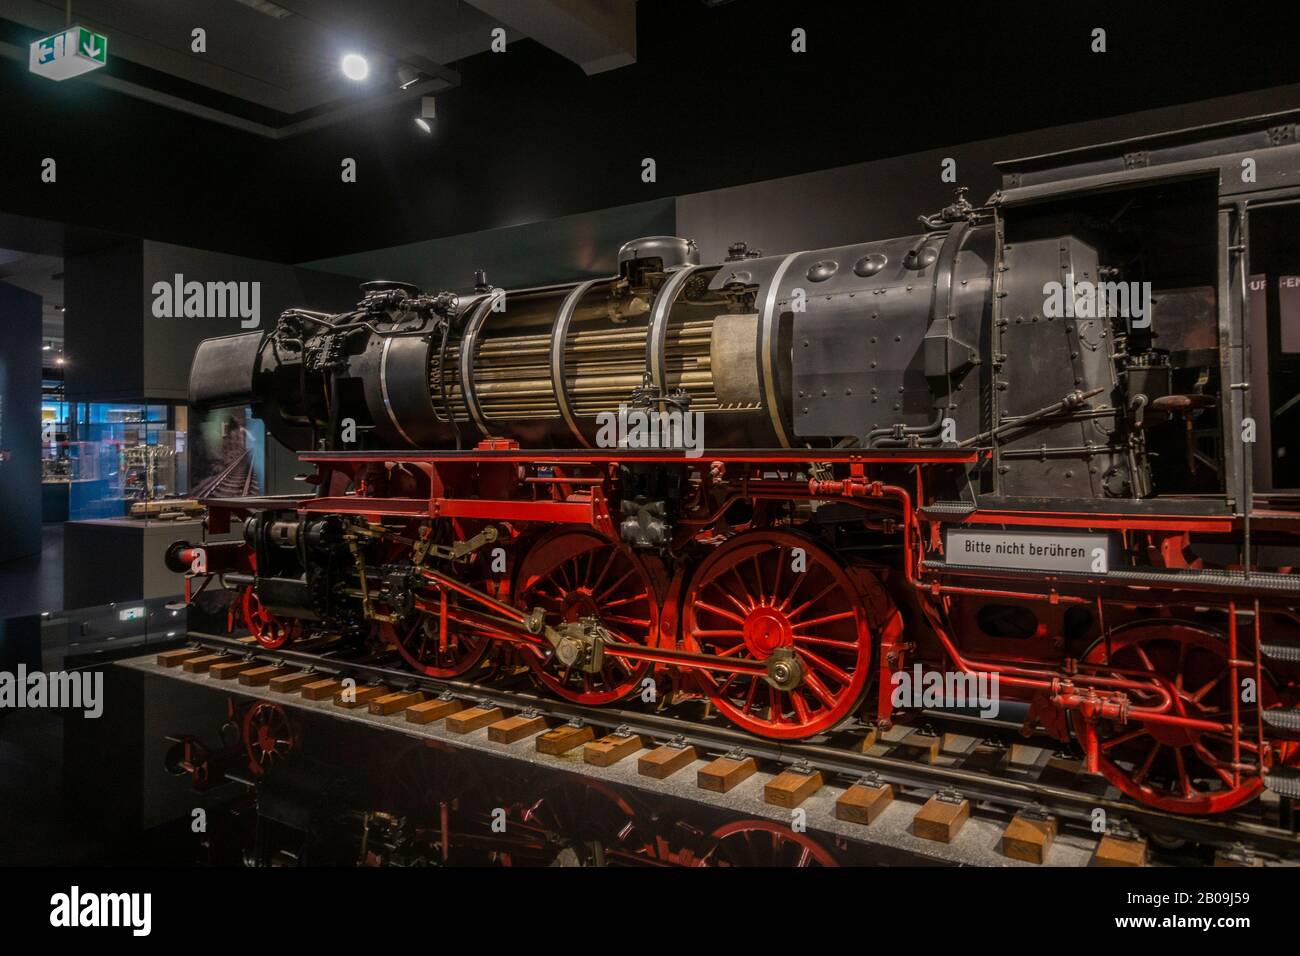 Corte de un tren de vapor reducido que se muestra en el Museo de Comunicaciones (parte del Museo del Transporte de Nuremberg), Nuremberg, Alemania. Foto de stock